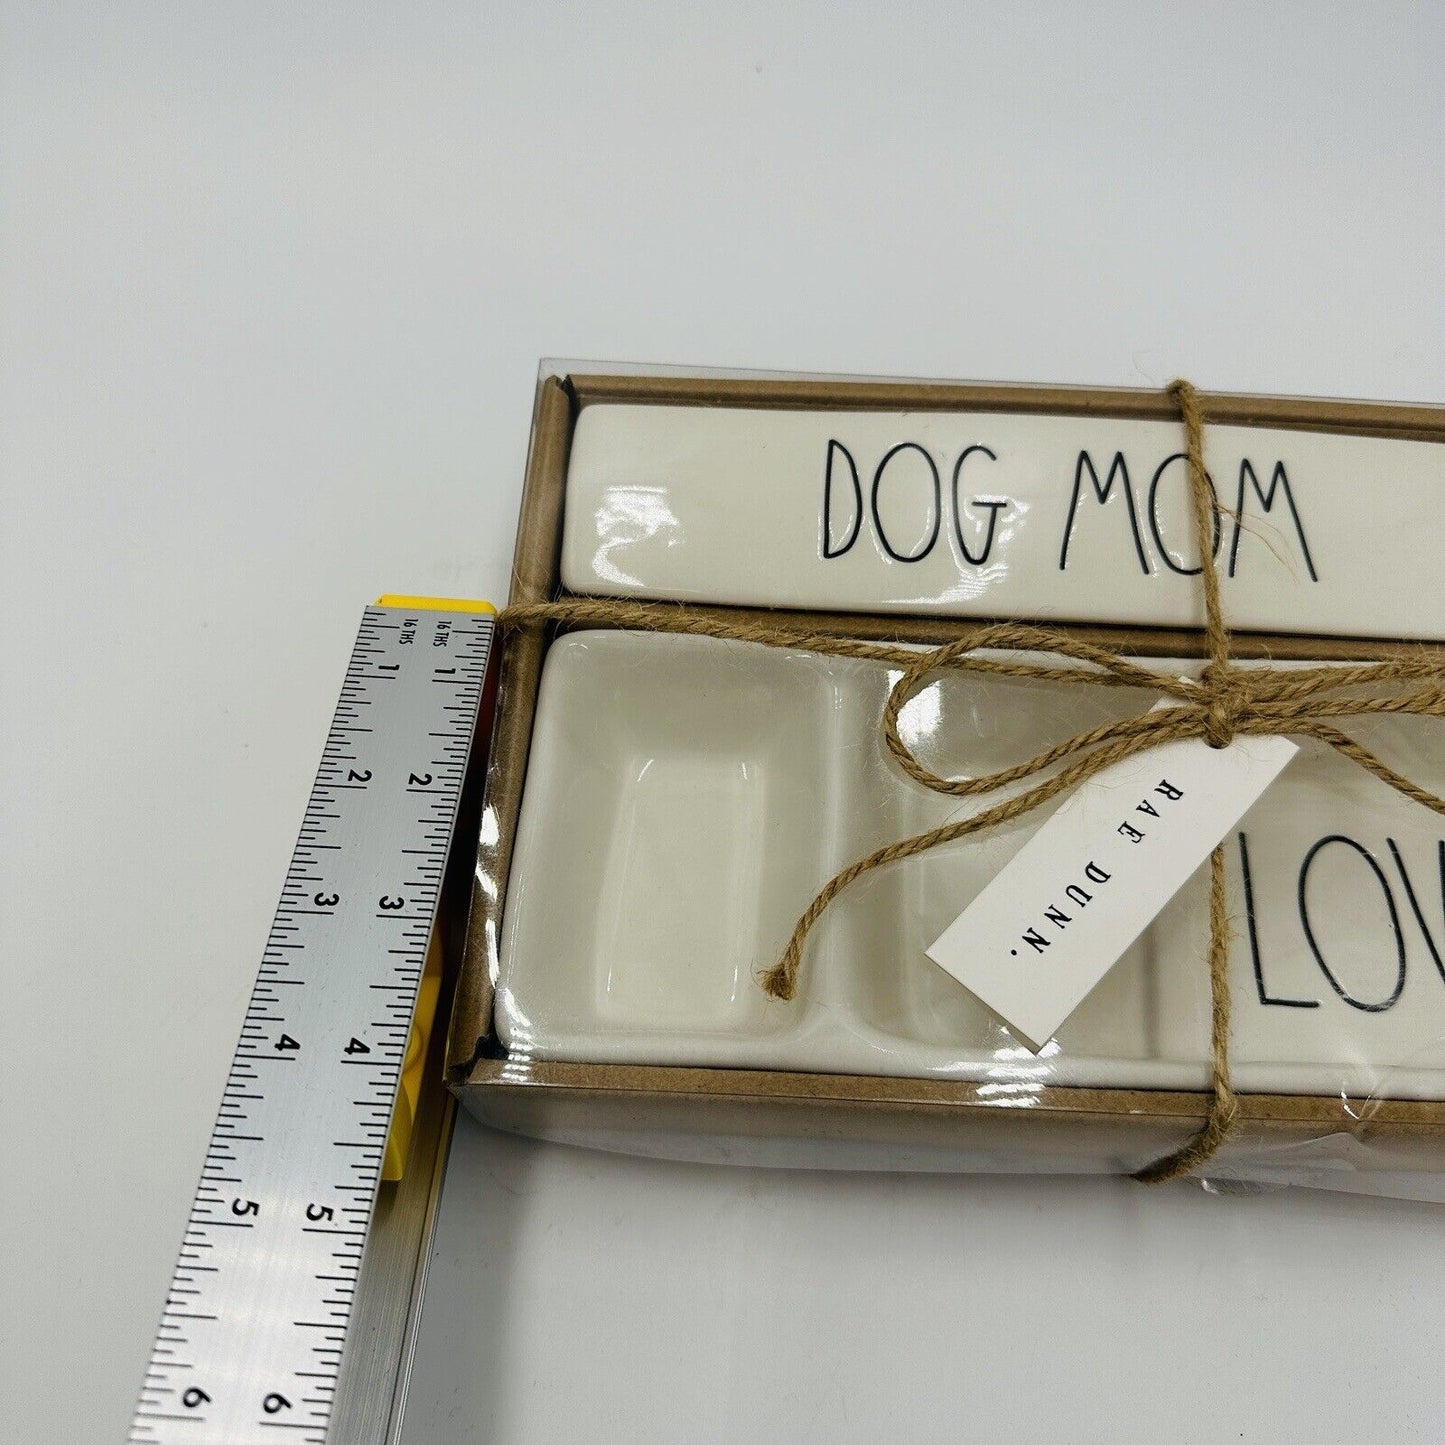 Rae Dunn by Magneta Dog Mom Desk Plaque & Desk Tray Gift Set Brand New